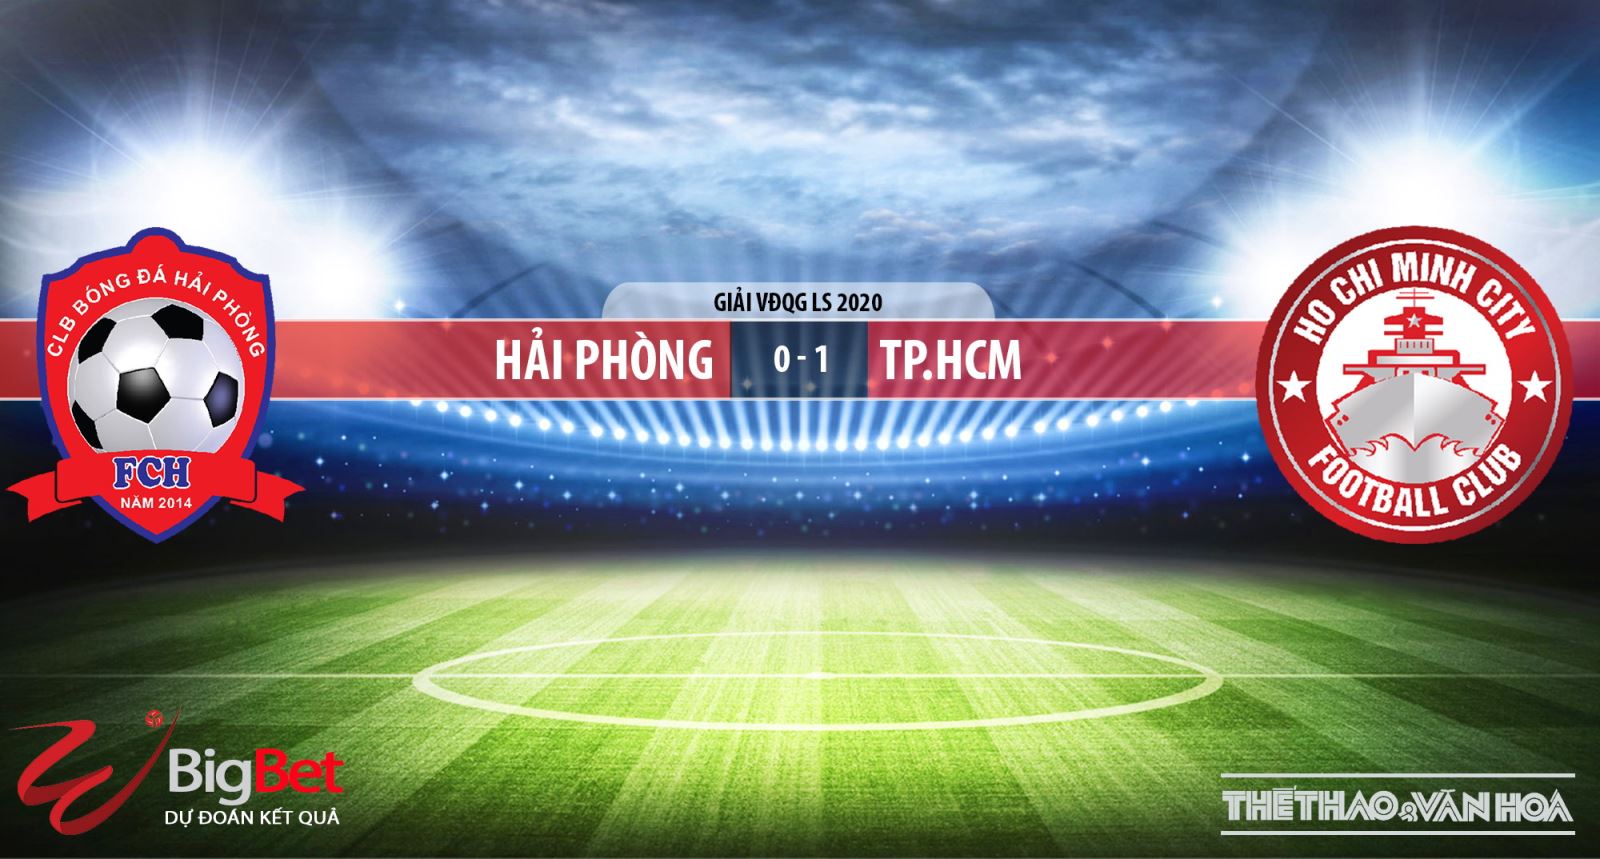 Hải Phòng vs Thành phố Hồ Chí Minh, Hải Phòng, TP.HCM, nhận định bóng đá bóng đá, nhận định, trực tiếp bóng đá, kèo bóng đá, VTV6, VTV5, BĐTV